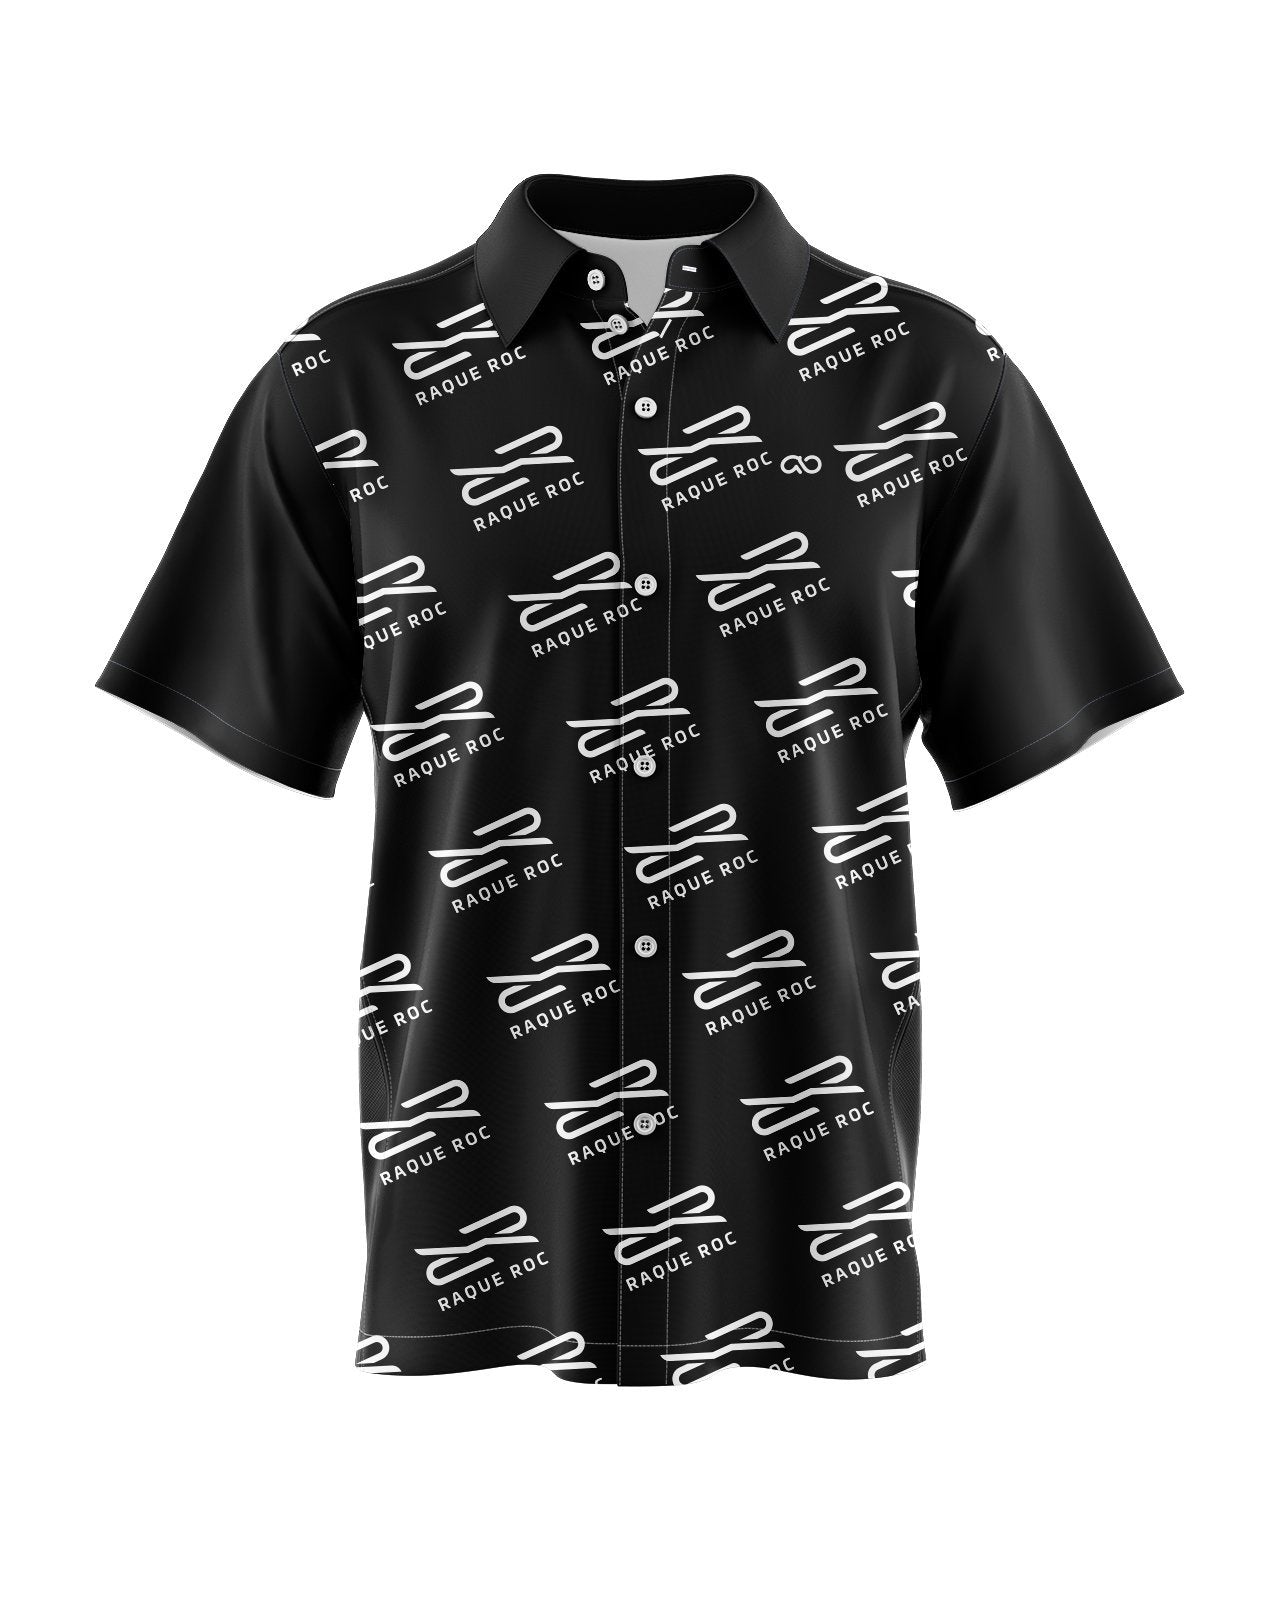 Dimension Men's Button Up Shirt